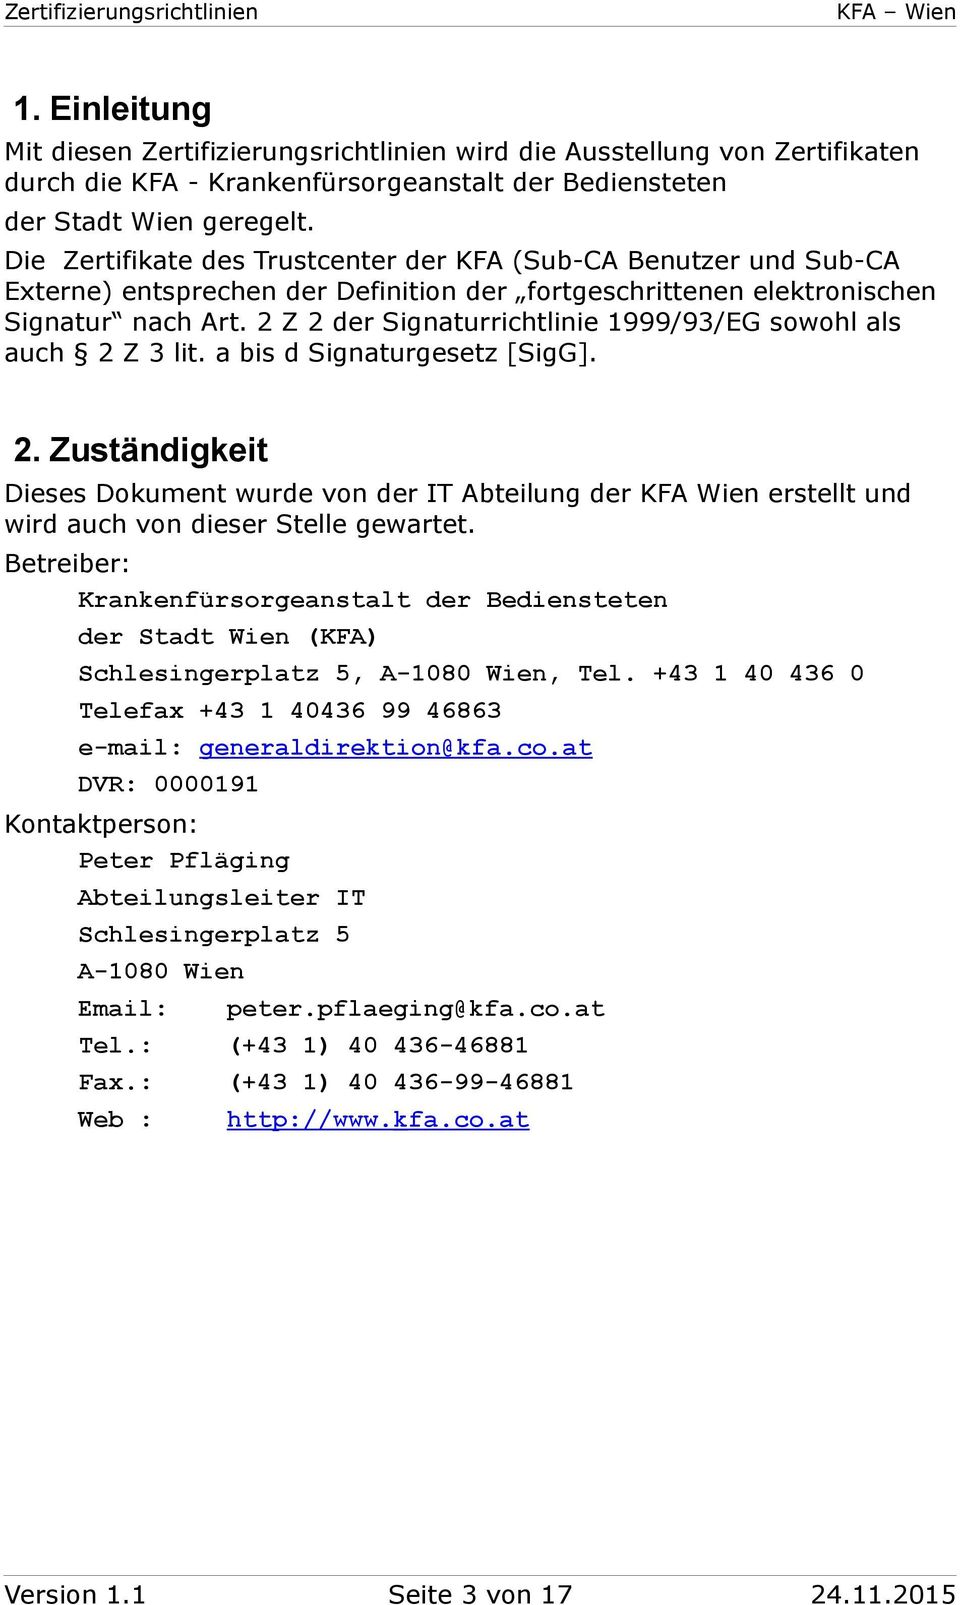 2 Z 2 der Signaturrichtlinie 1999/93/EG swhl als auch 2 Z 3 lit. a bis d Signaturgesetz [SigG]. 2. Zuständigkeit Dieses Dkument wurde vn der IT Abteilung der KFA Wien erstellt und wird auch vn dieser Stelle gewartet.